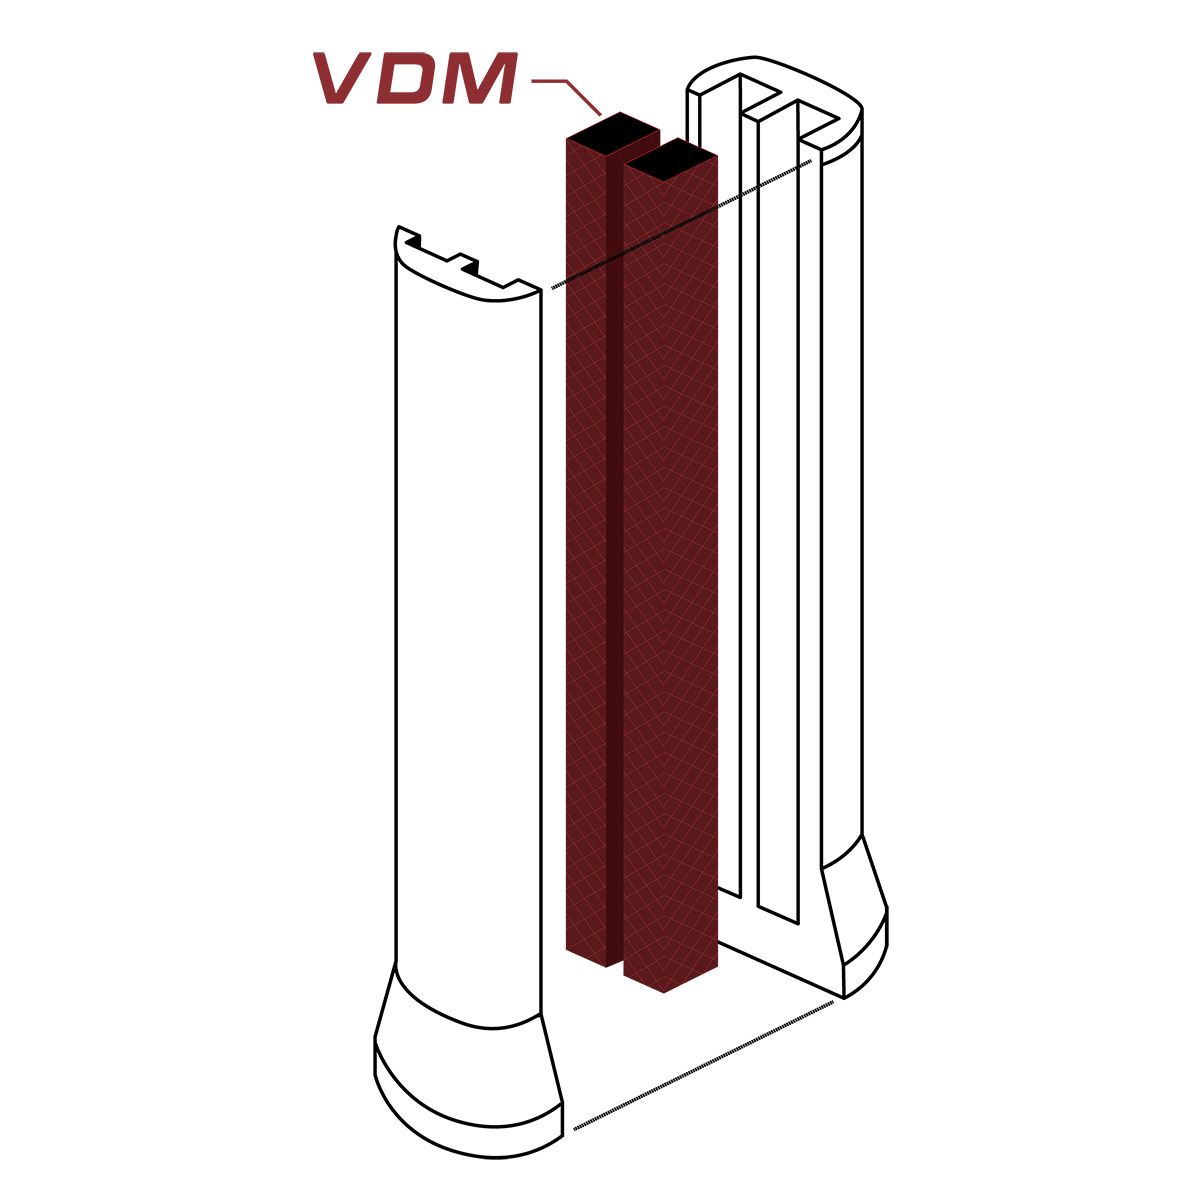 VDM Technologia zastosowana w rakiecie Yonex ezone 2020